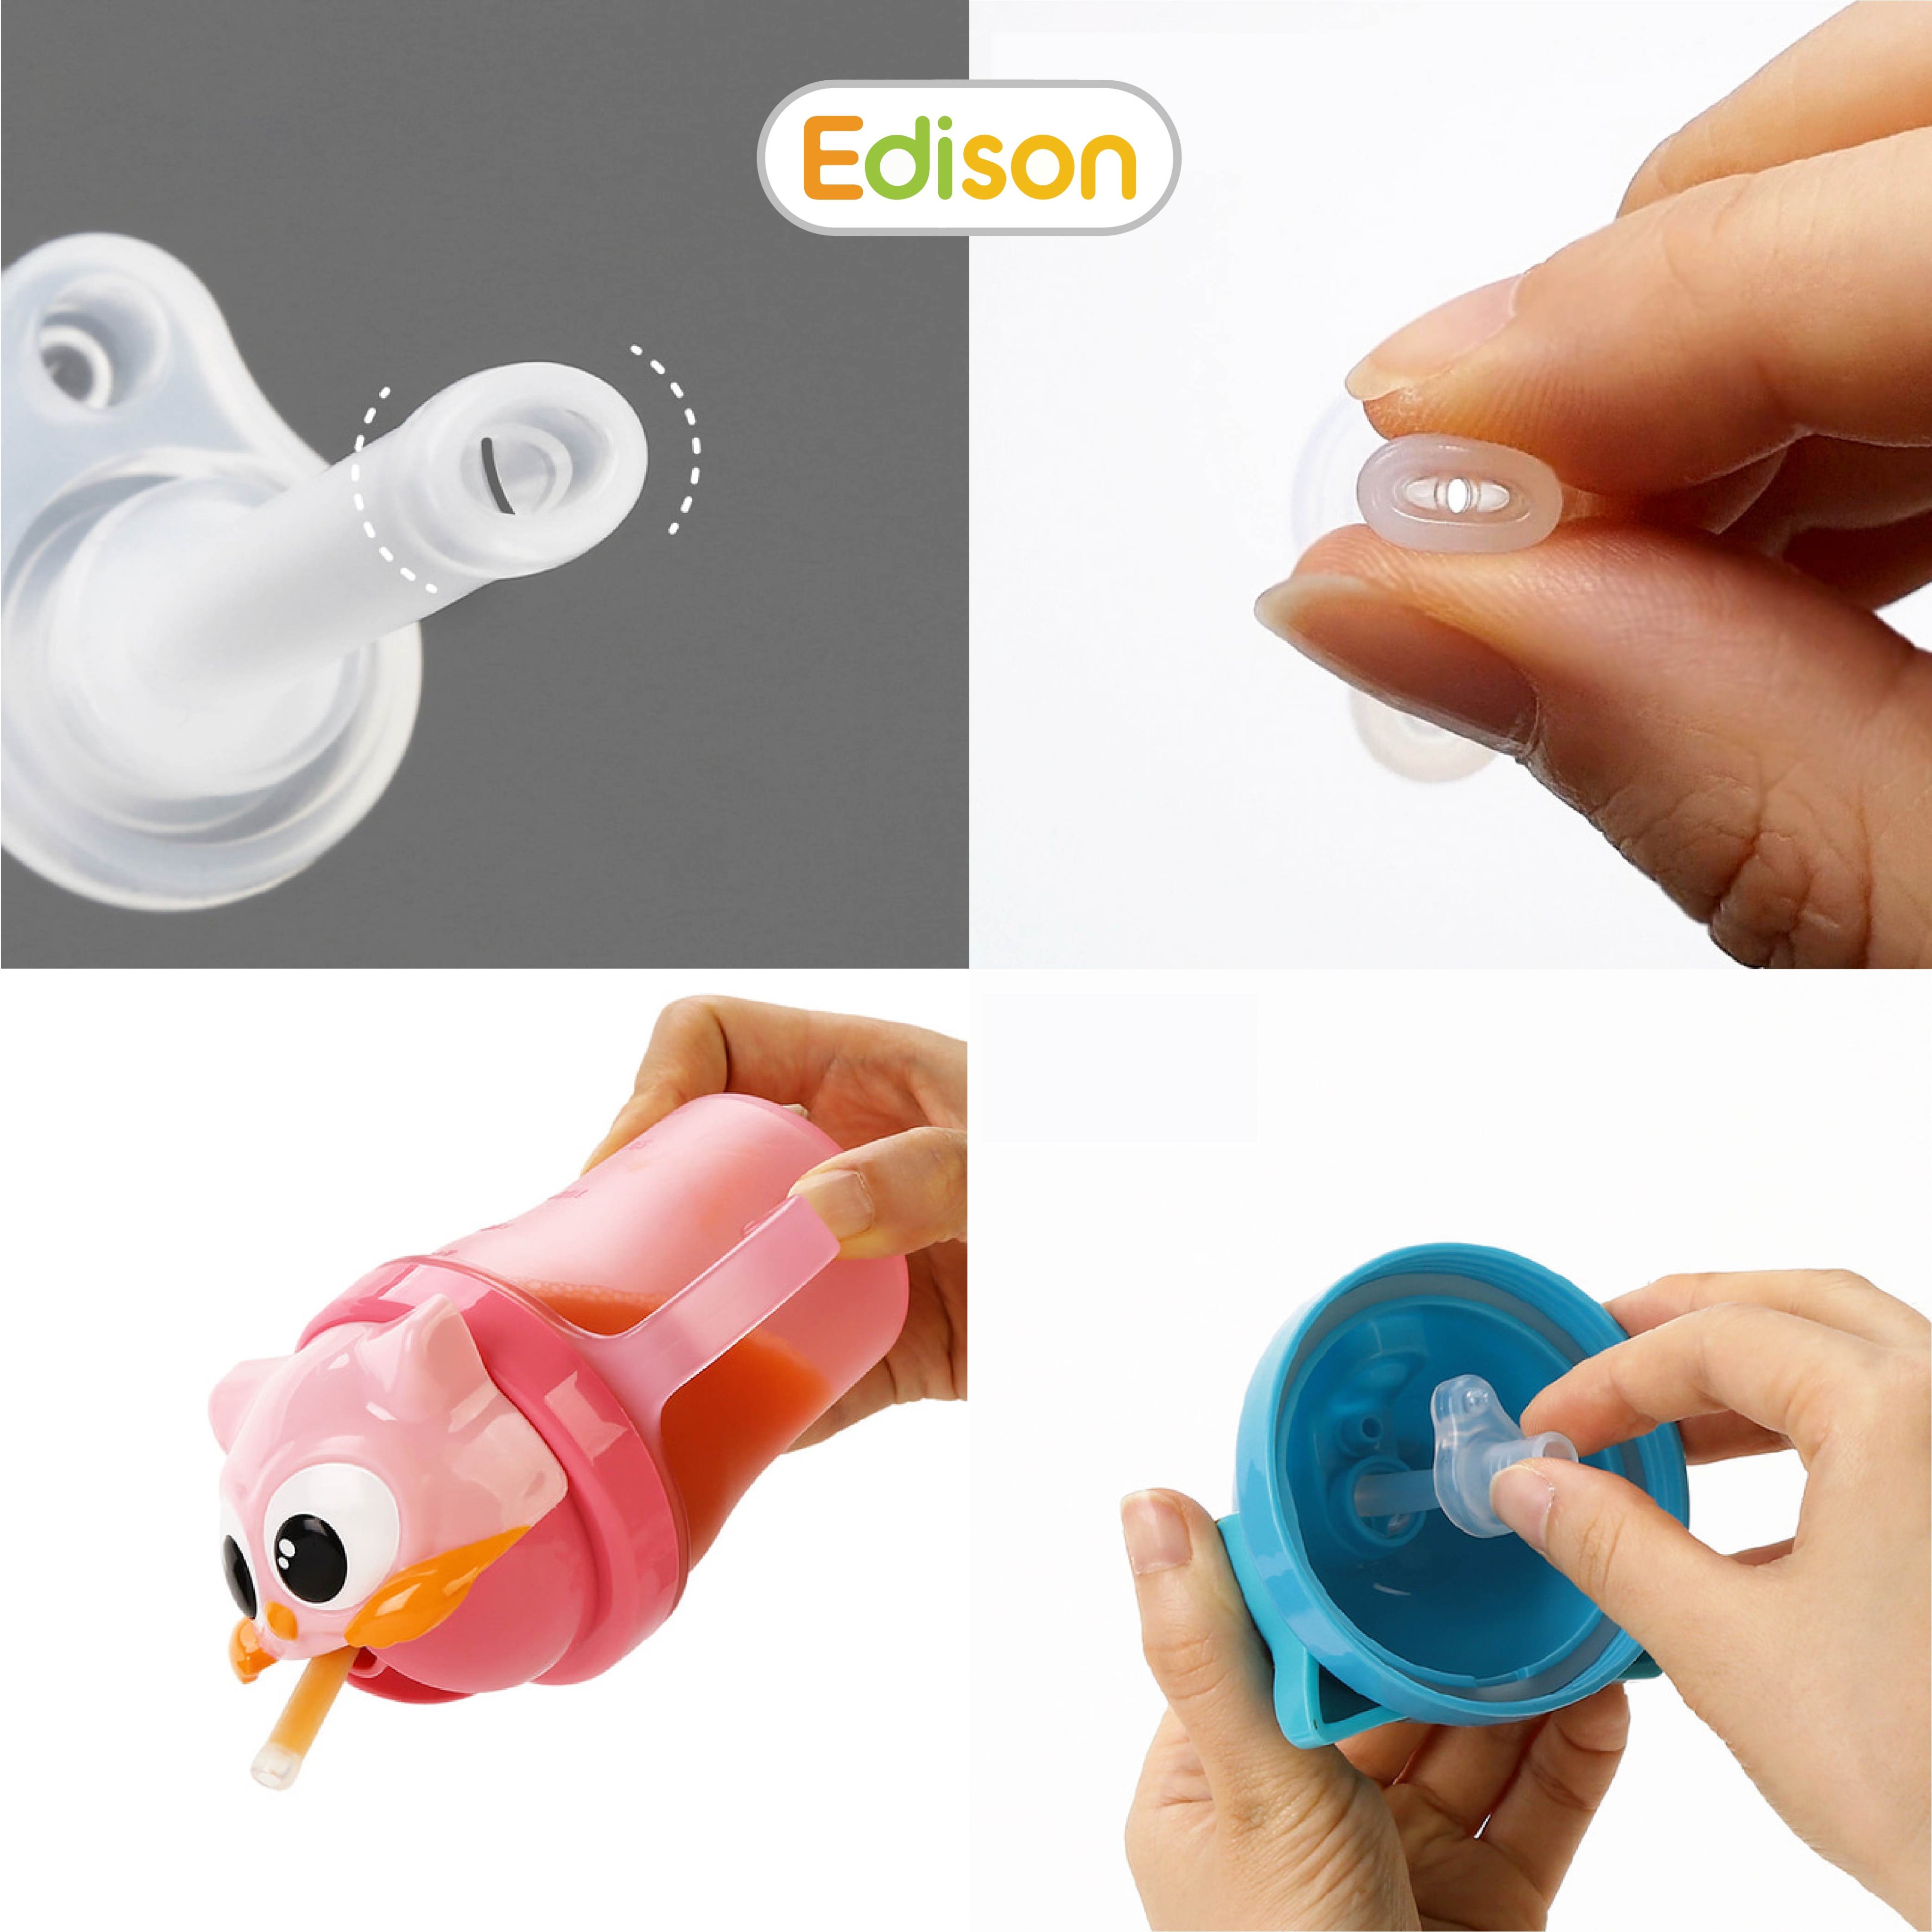 Set ống hút sữa silicon đa năng Edison chính hãng Hàn Quốc cho bé tập hút màu trắng mã 3024